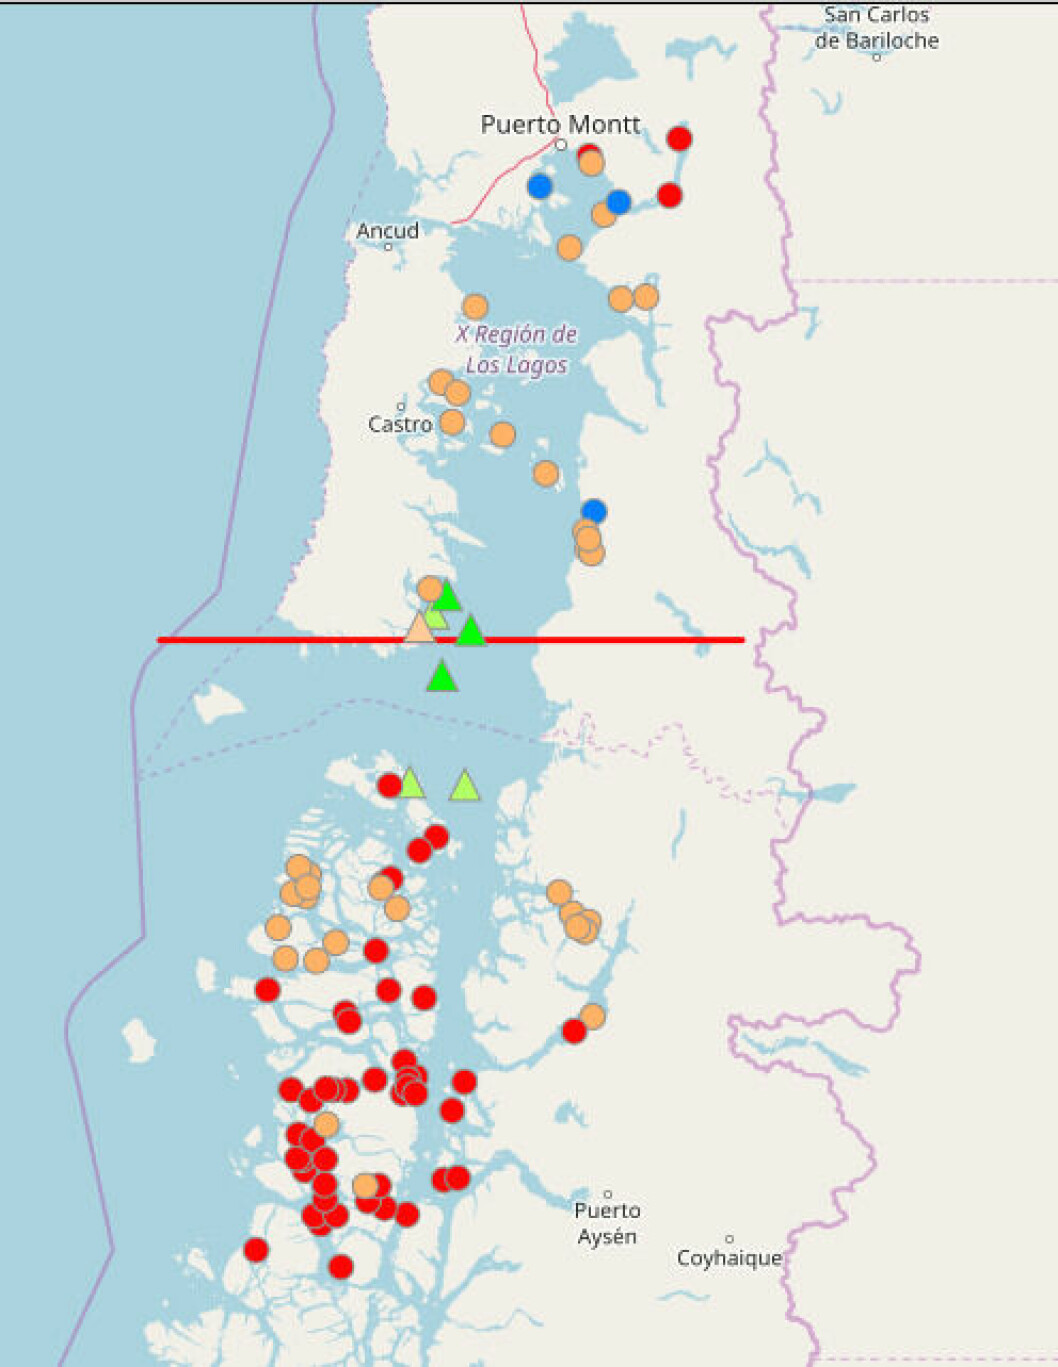 Los blooms de algas ya han sido detectados en Los Lagos, Aysen y Magallanes. Los puntos rojos muestran áreas afectadas por Floraciones Algales Nocivas (FAN). Imagen: Intesal.